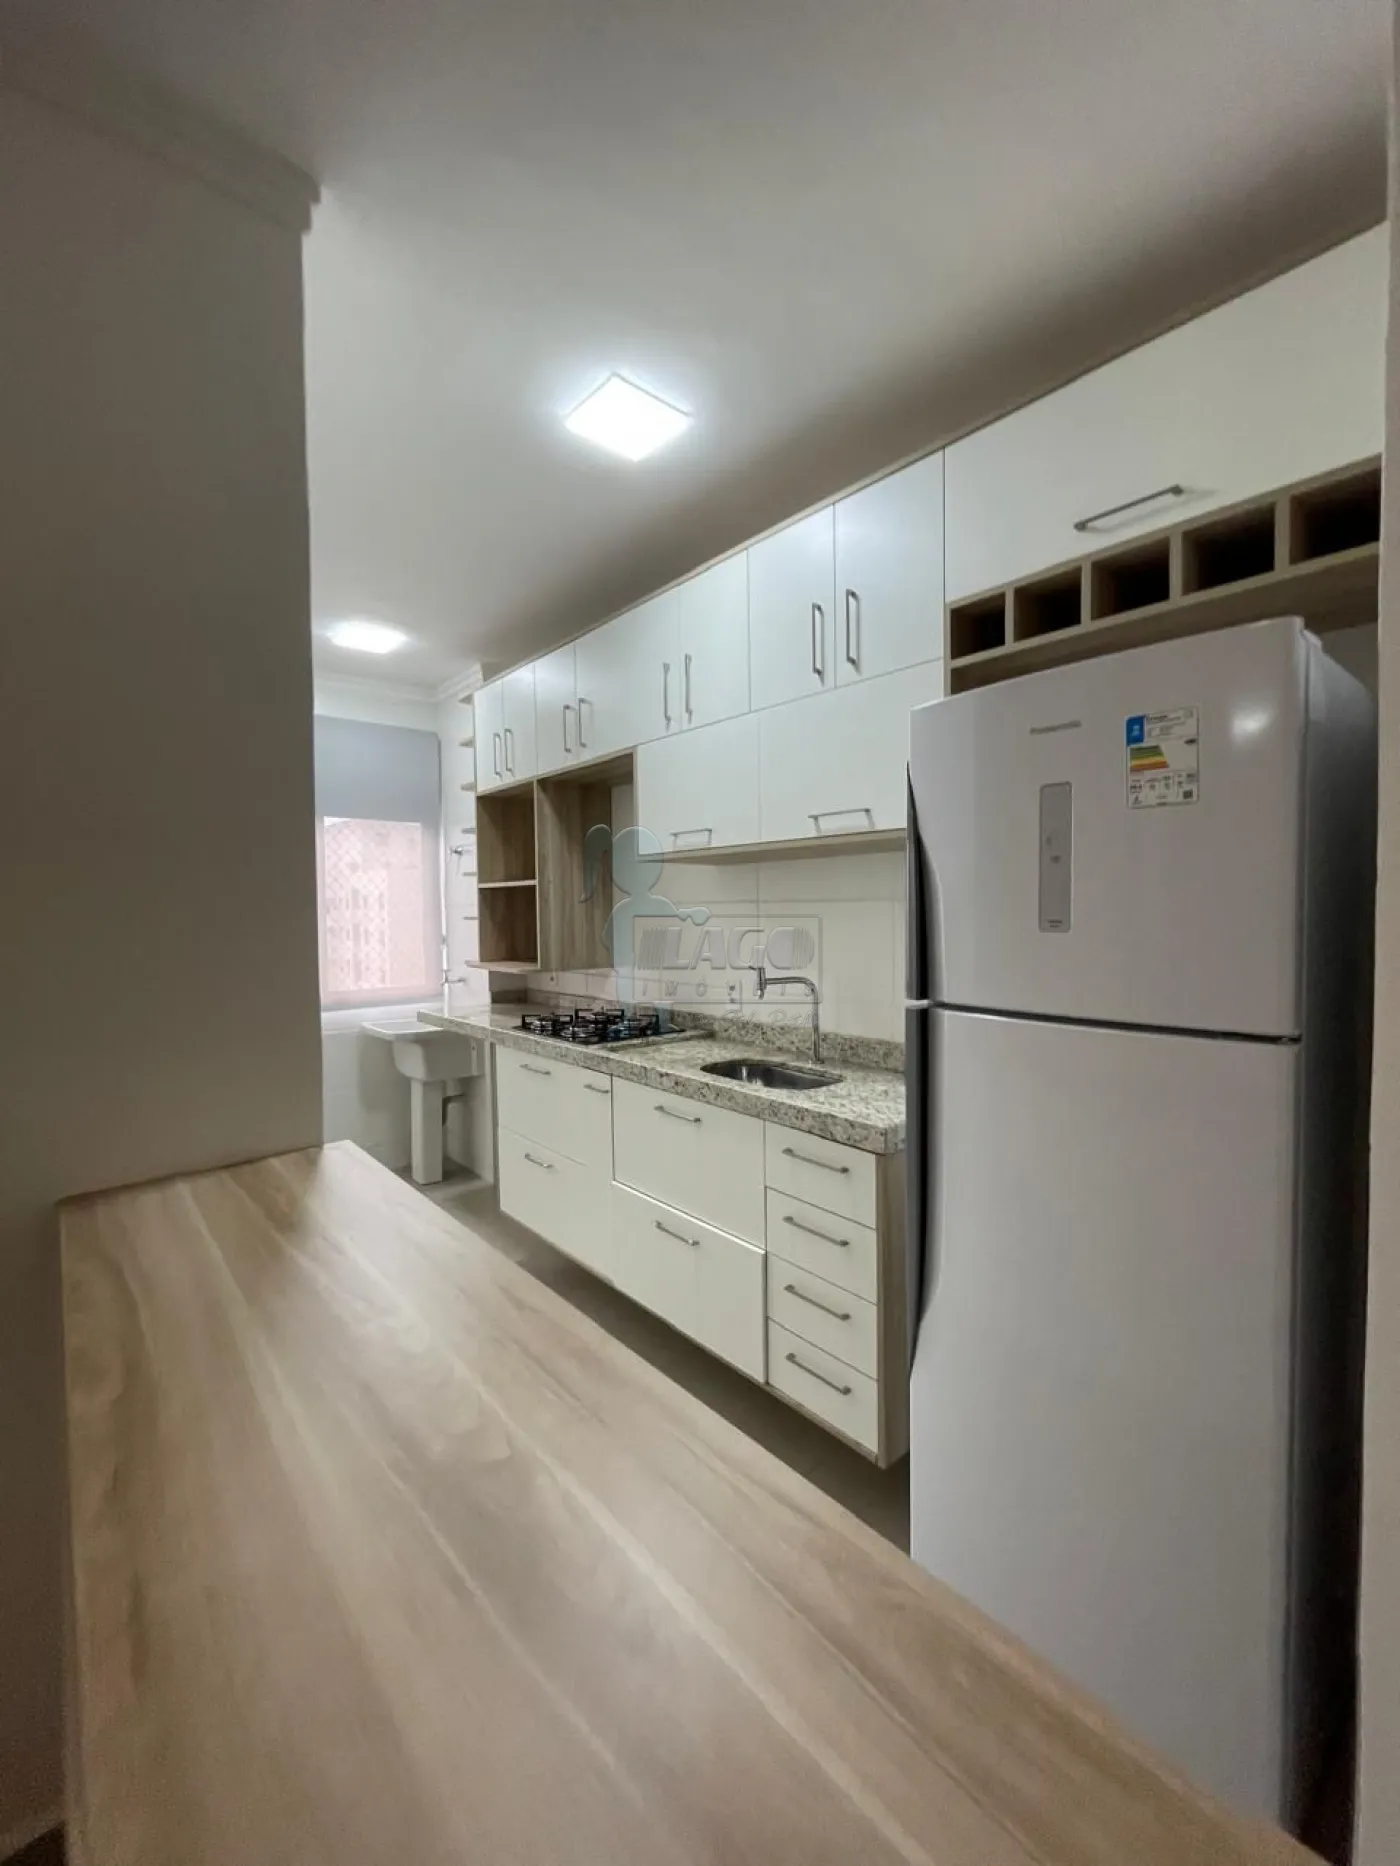 Comprar Apartamento / Padrão em Ribeirão Preto R$ 300.000,00 - Foto 3